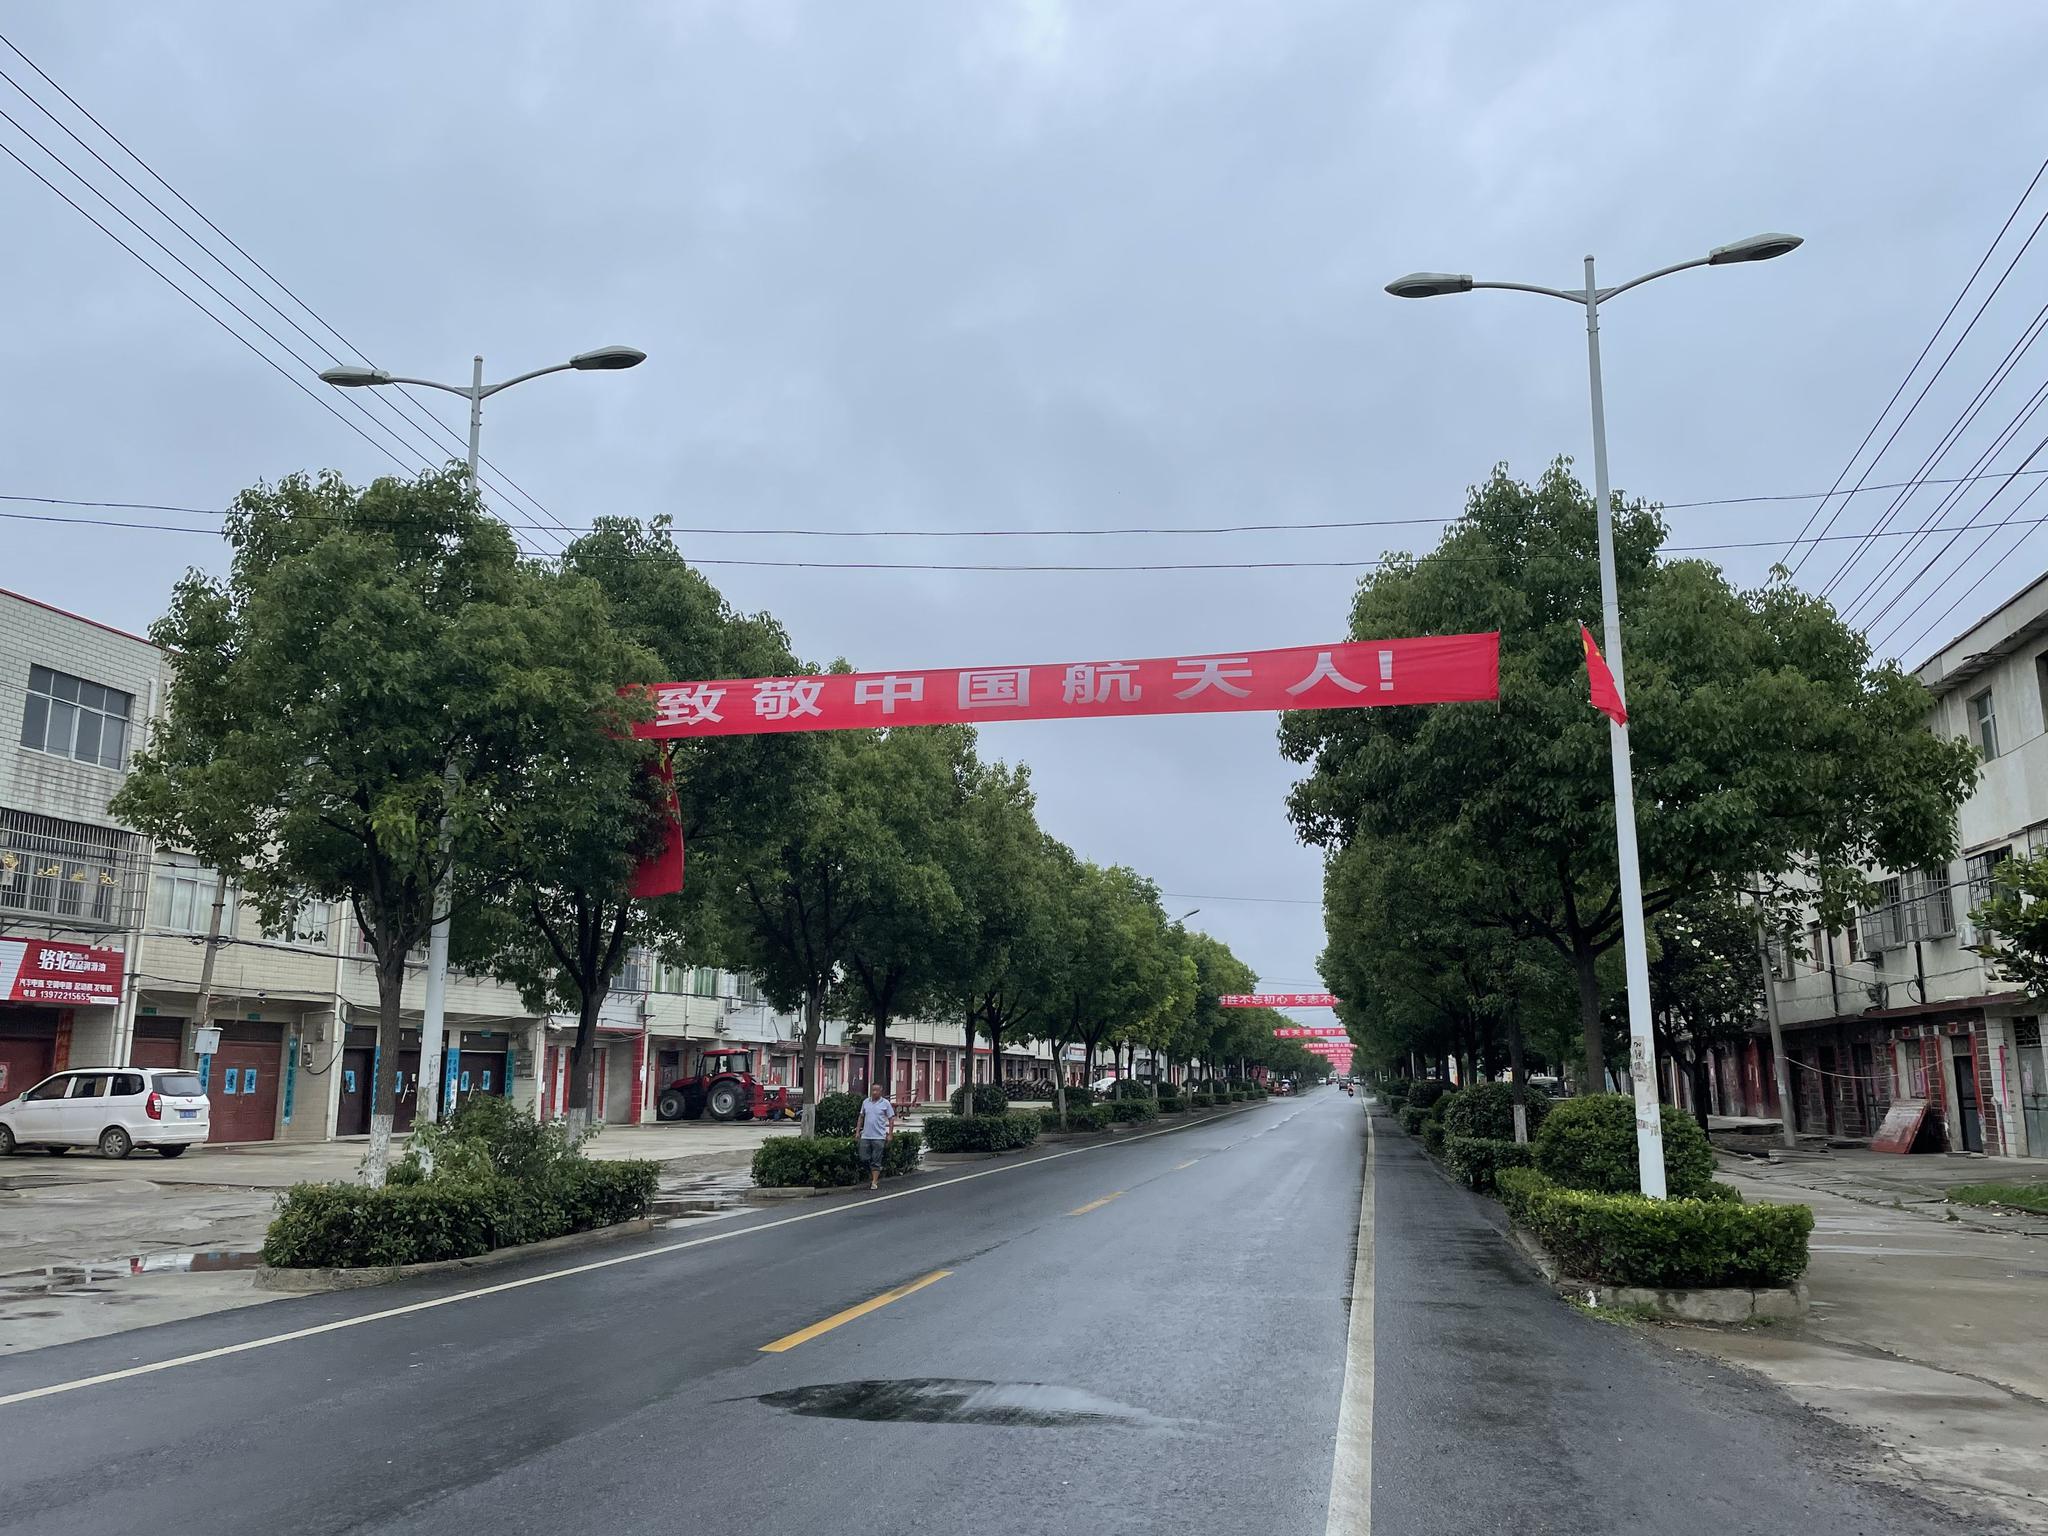 6月17日，聂海胜家乡杨垱镇街道上挂满了祝福聂海胜的横幅。新京报记者 周思雅 摄